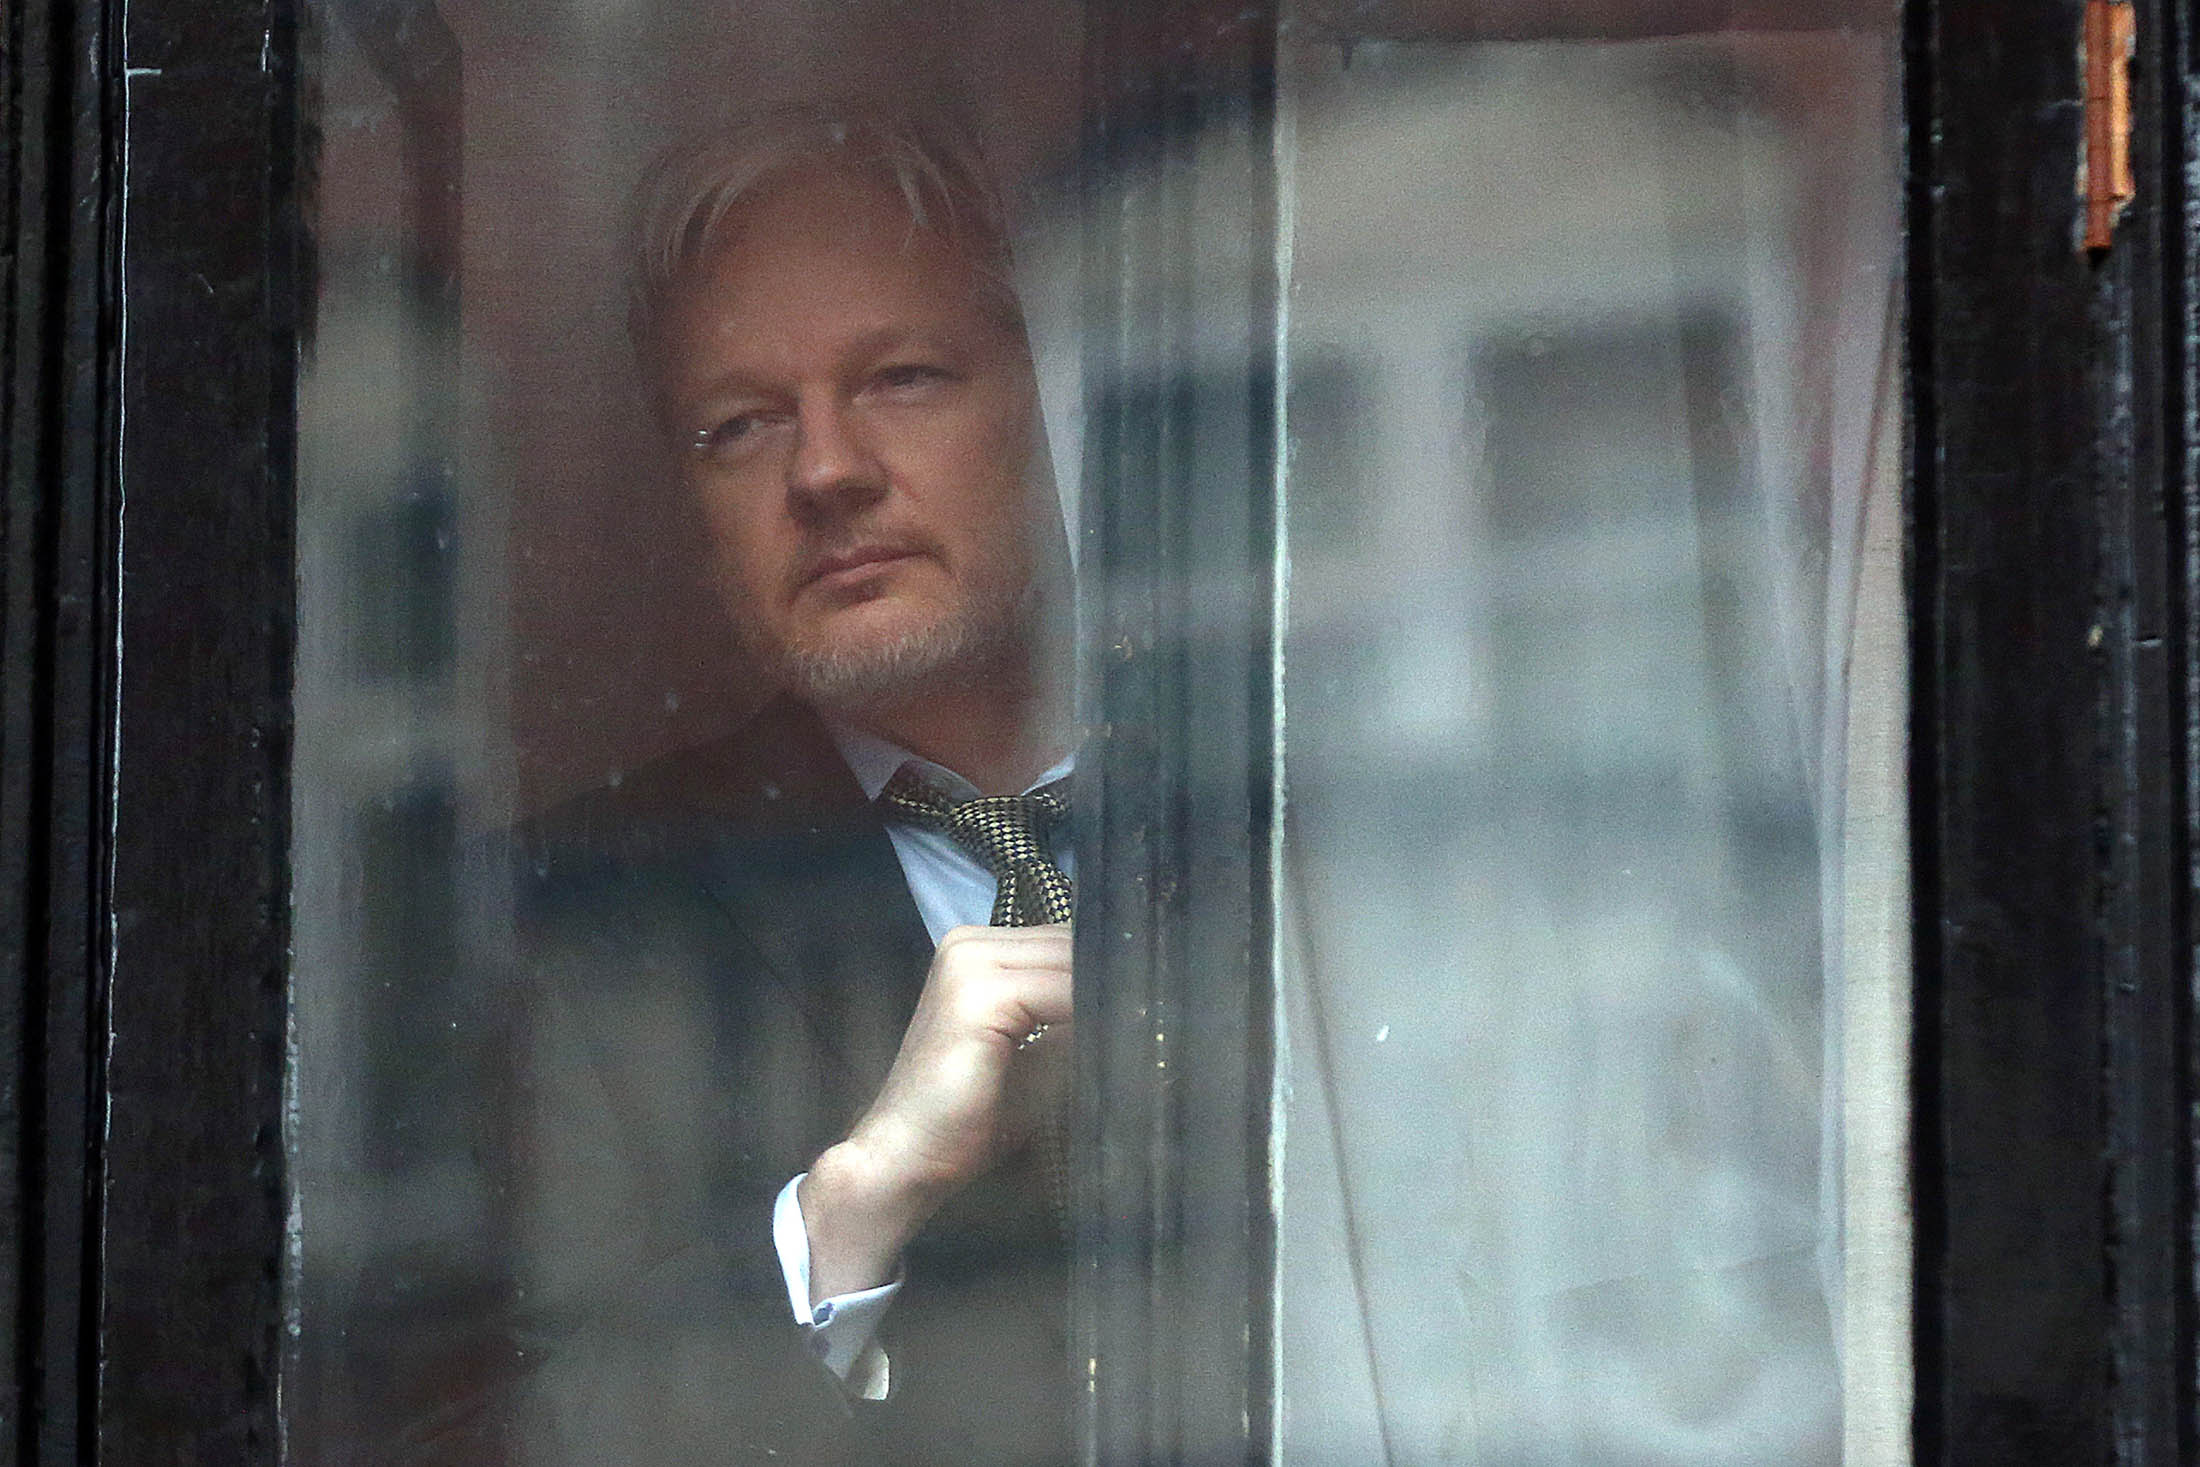 Wikileaks founder Julian Assange.
